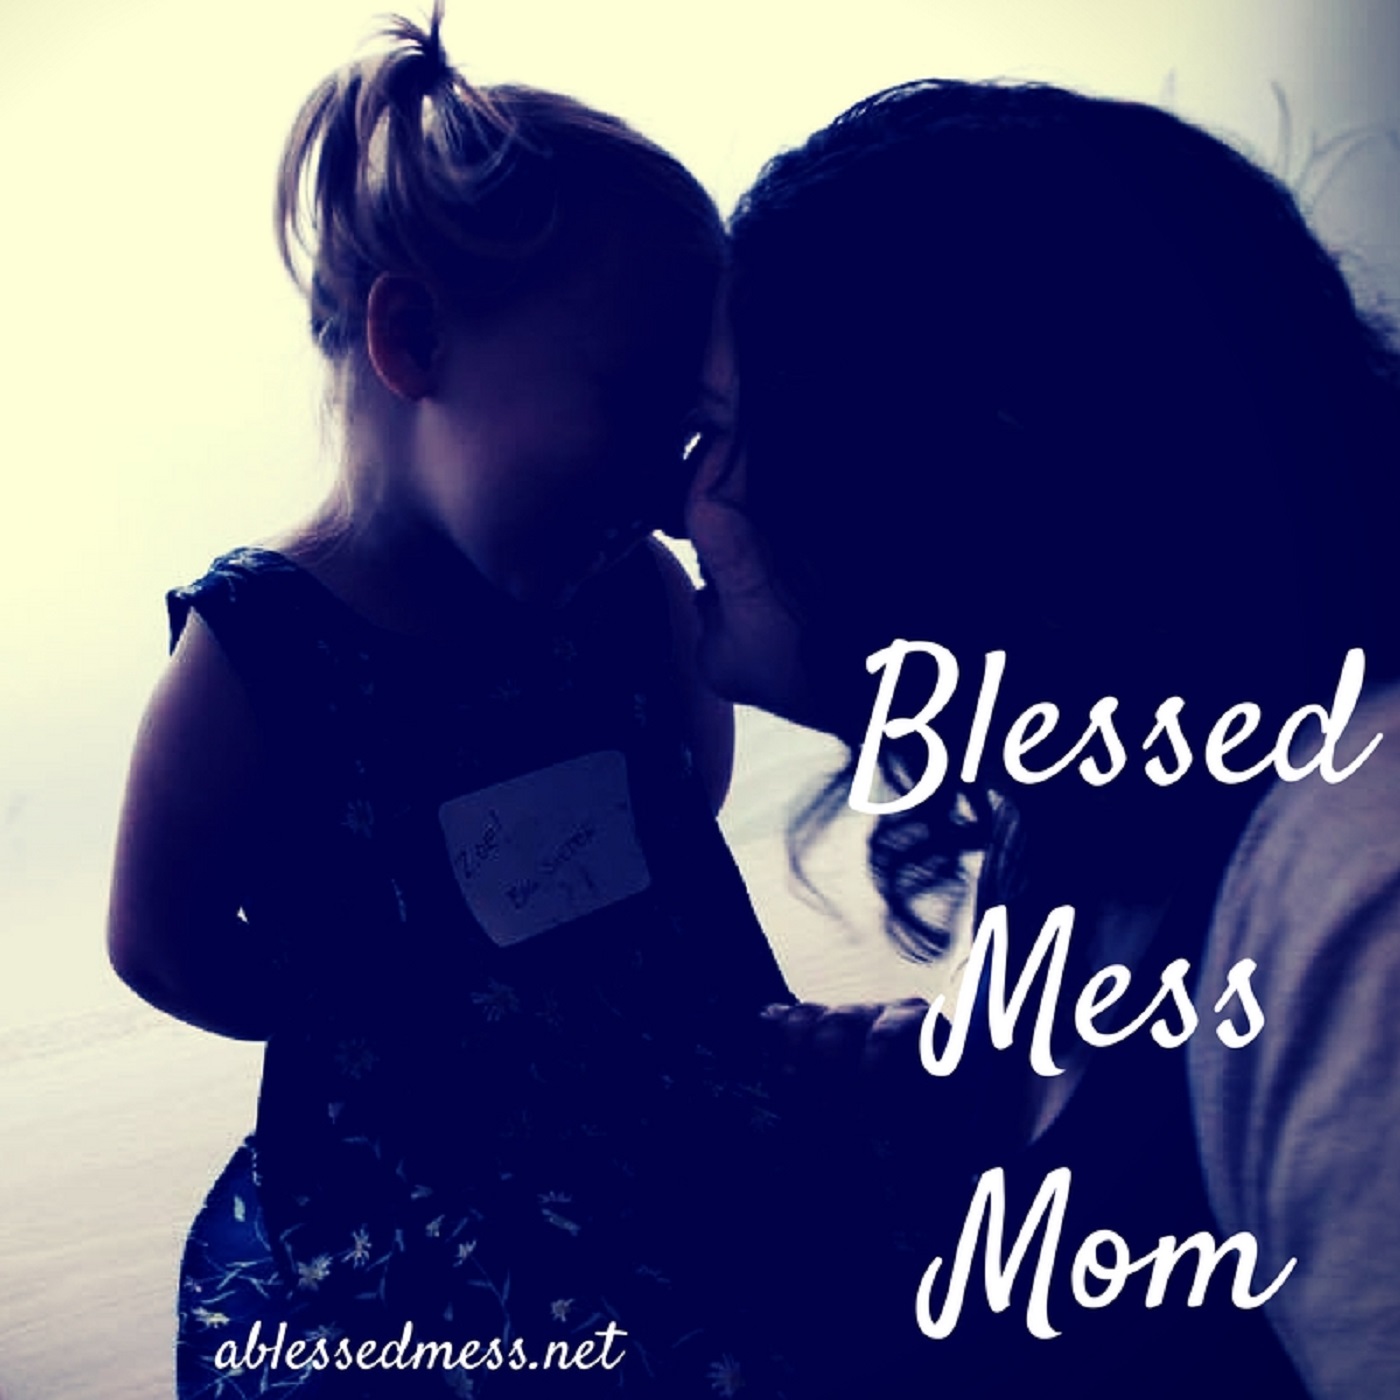 Blessed Mess Mom - Barbara Bush, New Royal Baby and Hot Yoga